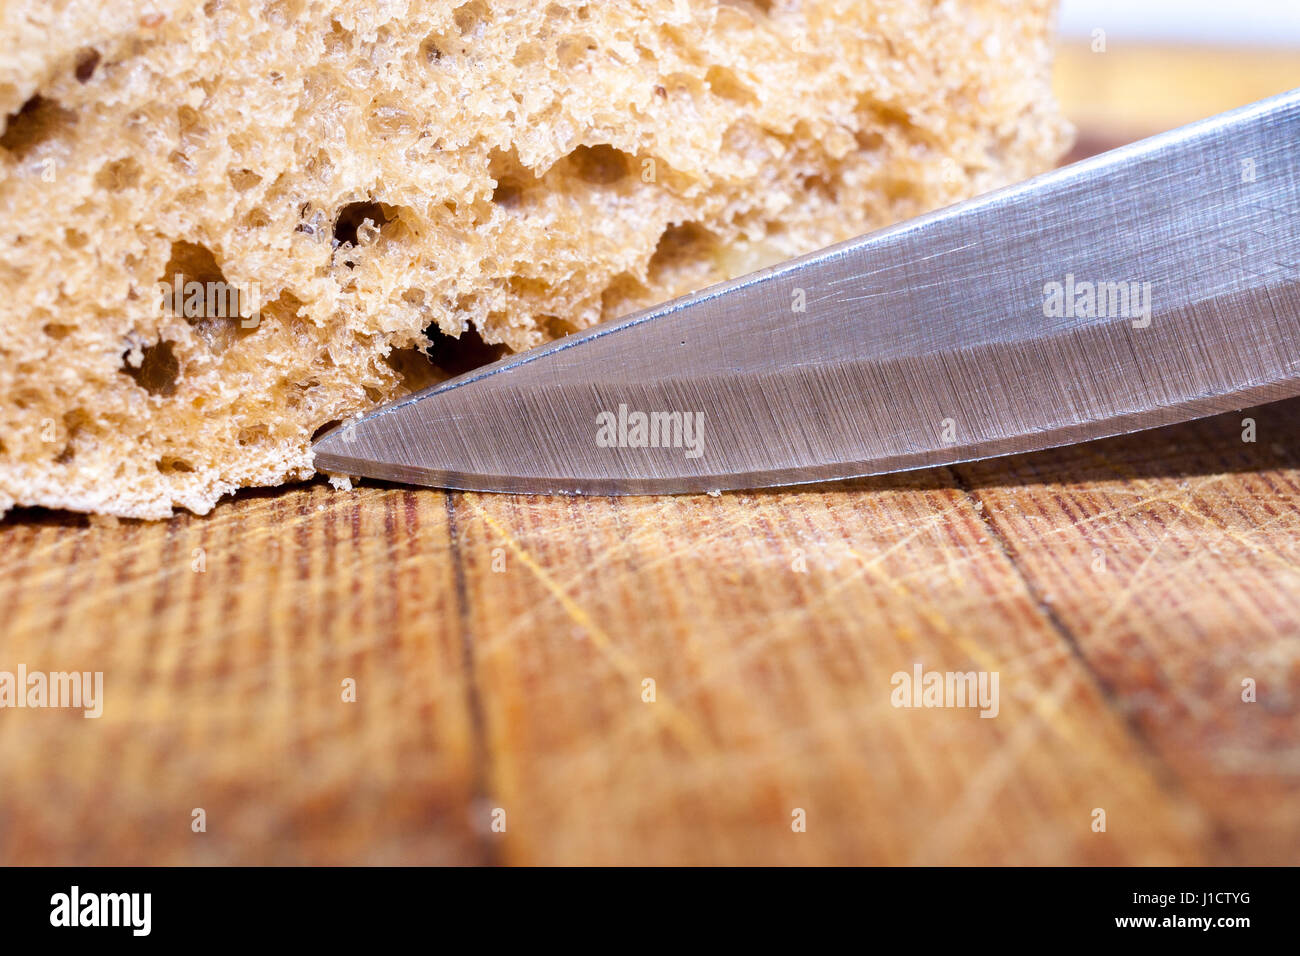 Taglia il pane immagini e fotografie stock ad alta risoluzione - Alamy